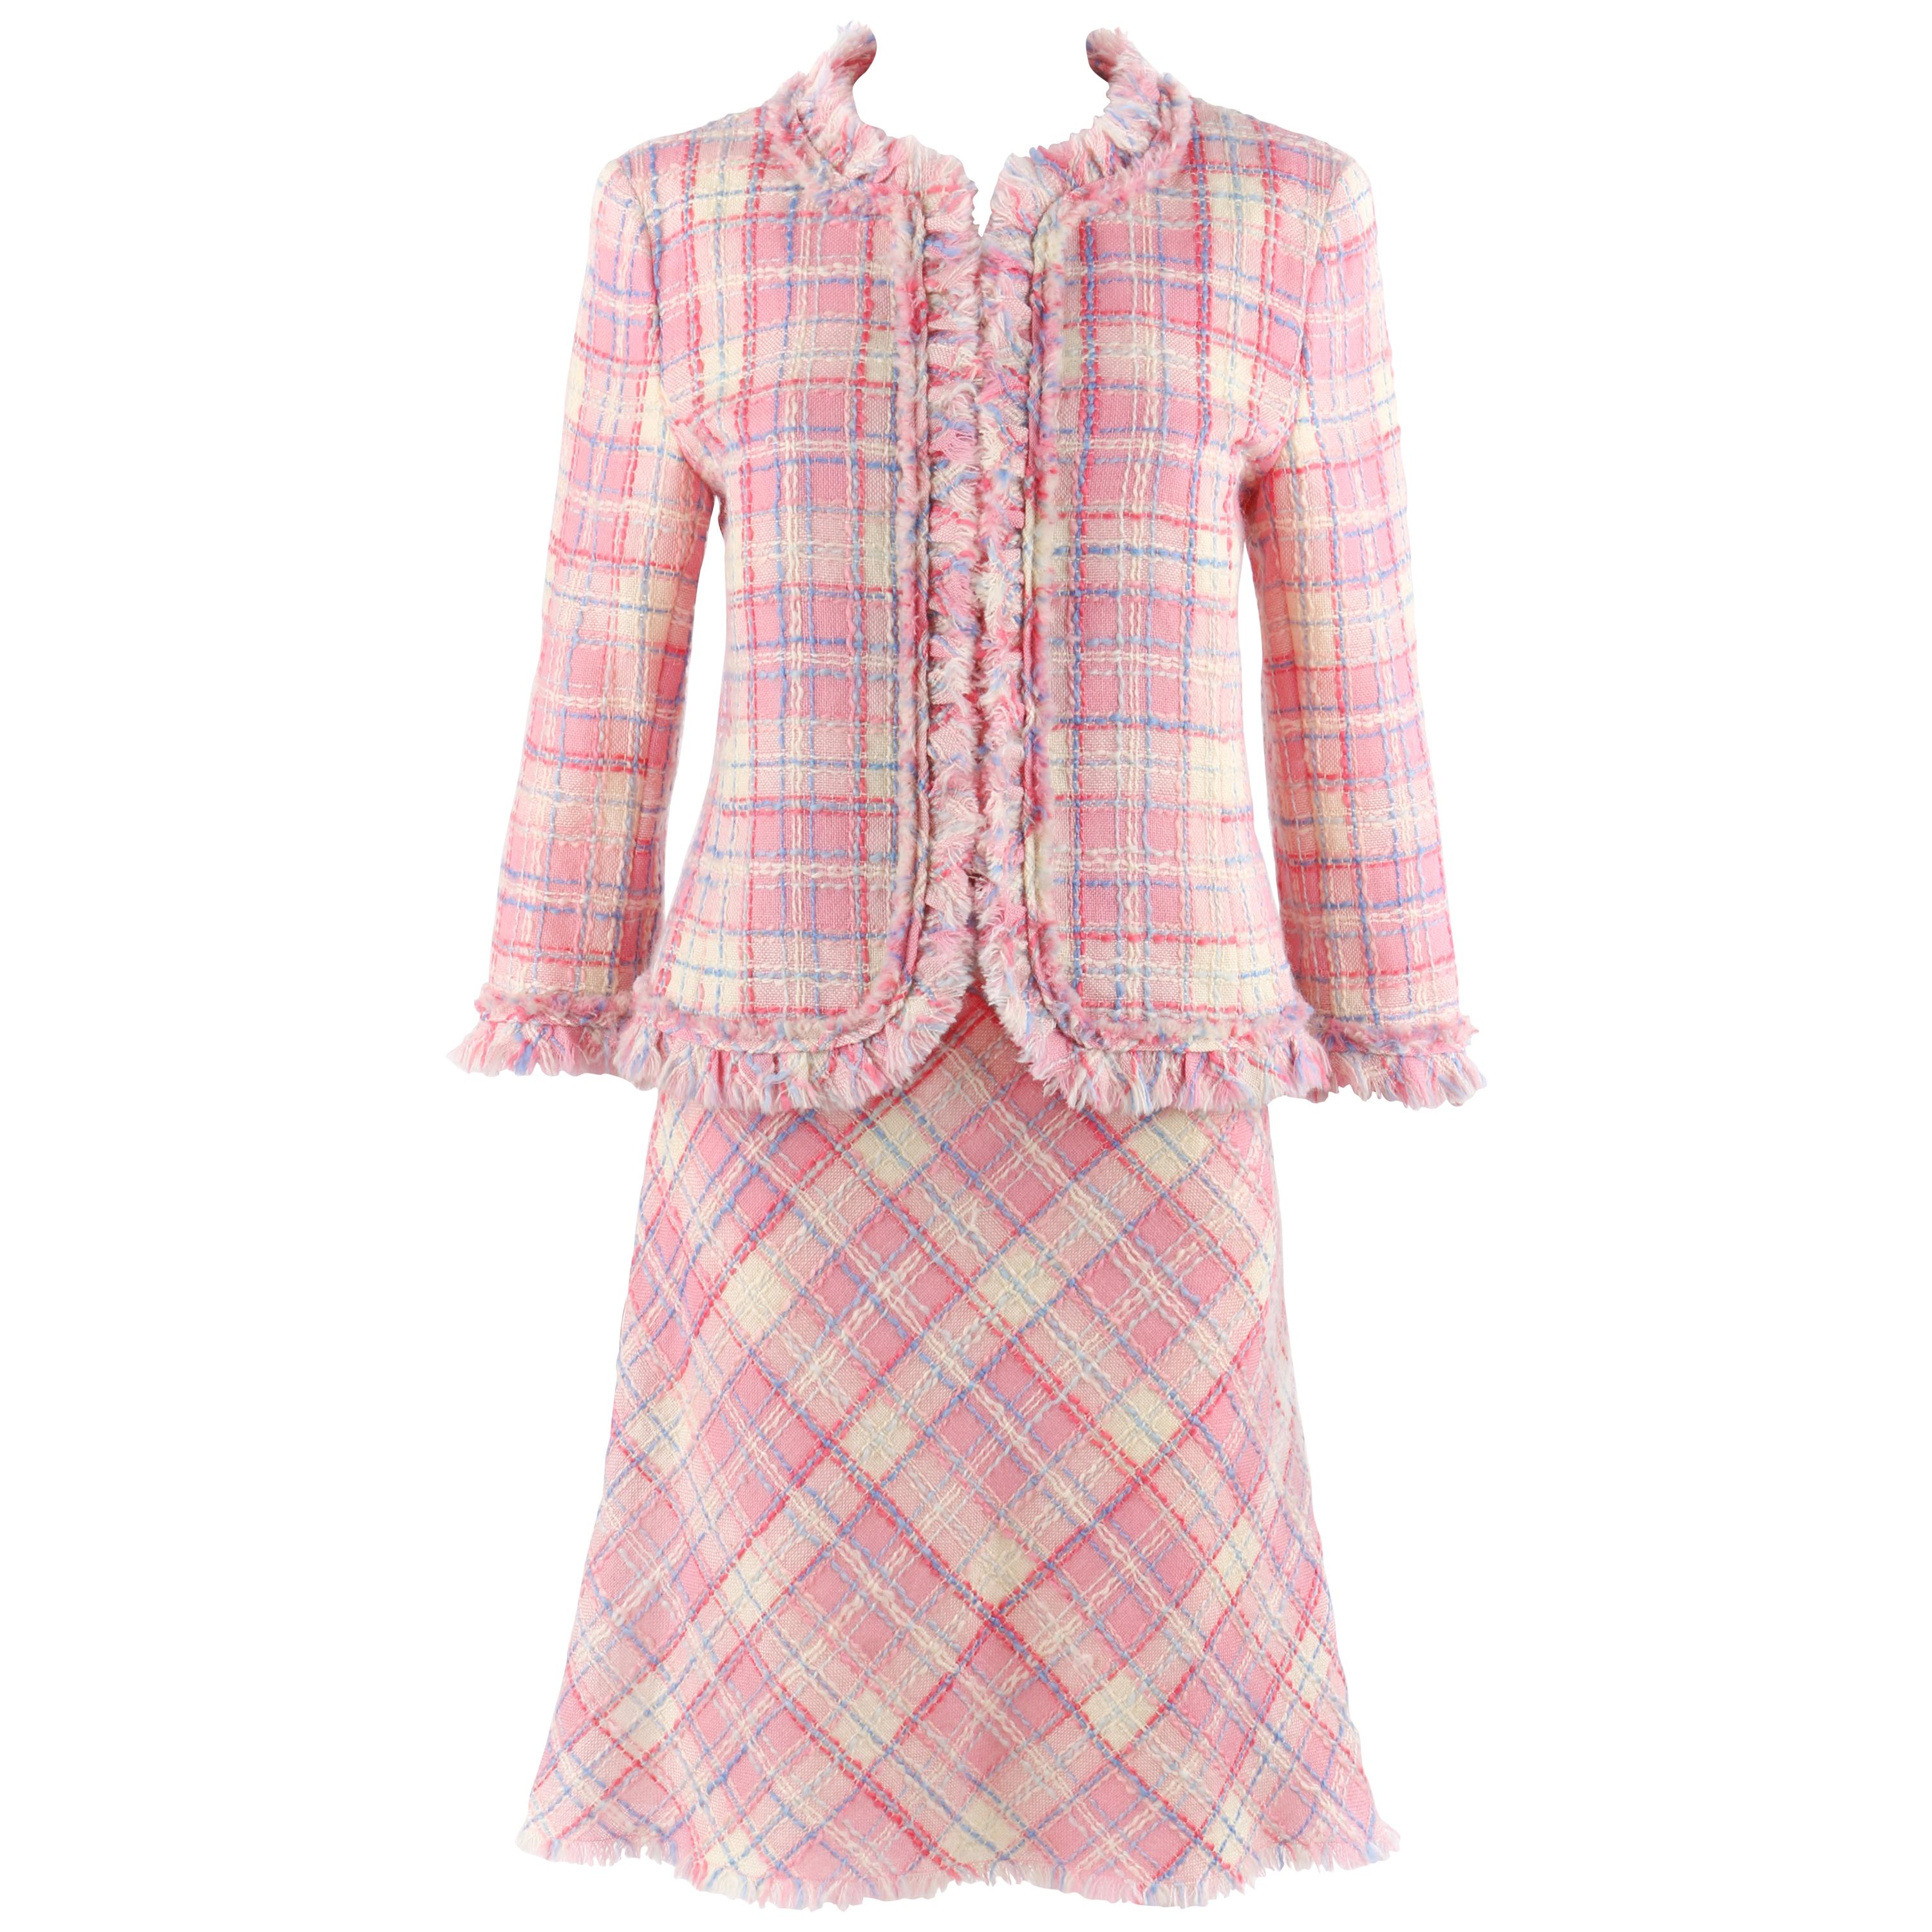 Light Pink double breasted herringbone Tweed Skirt Suit